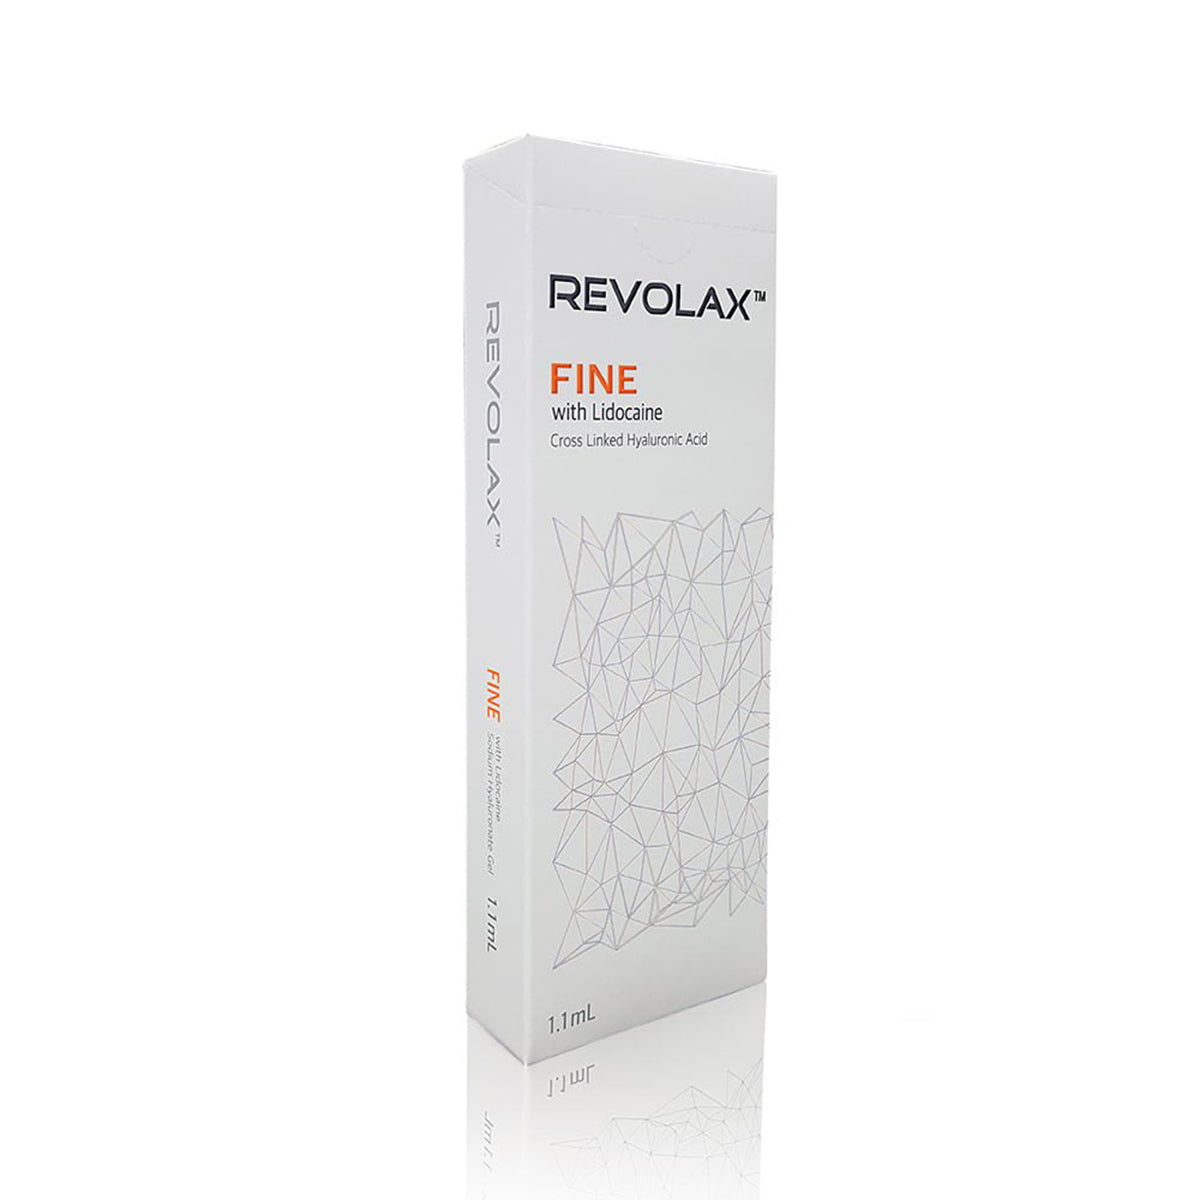 REVOLAX--fine